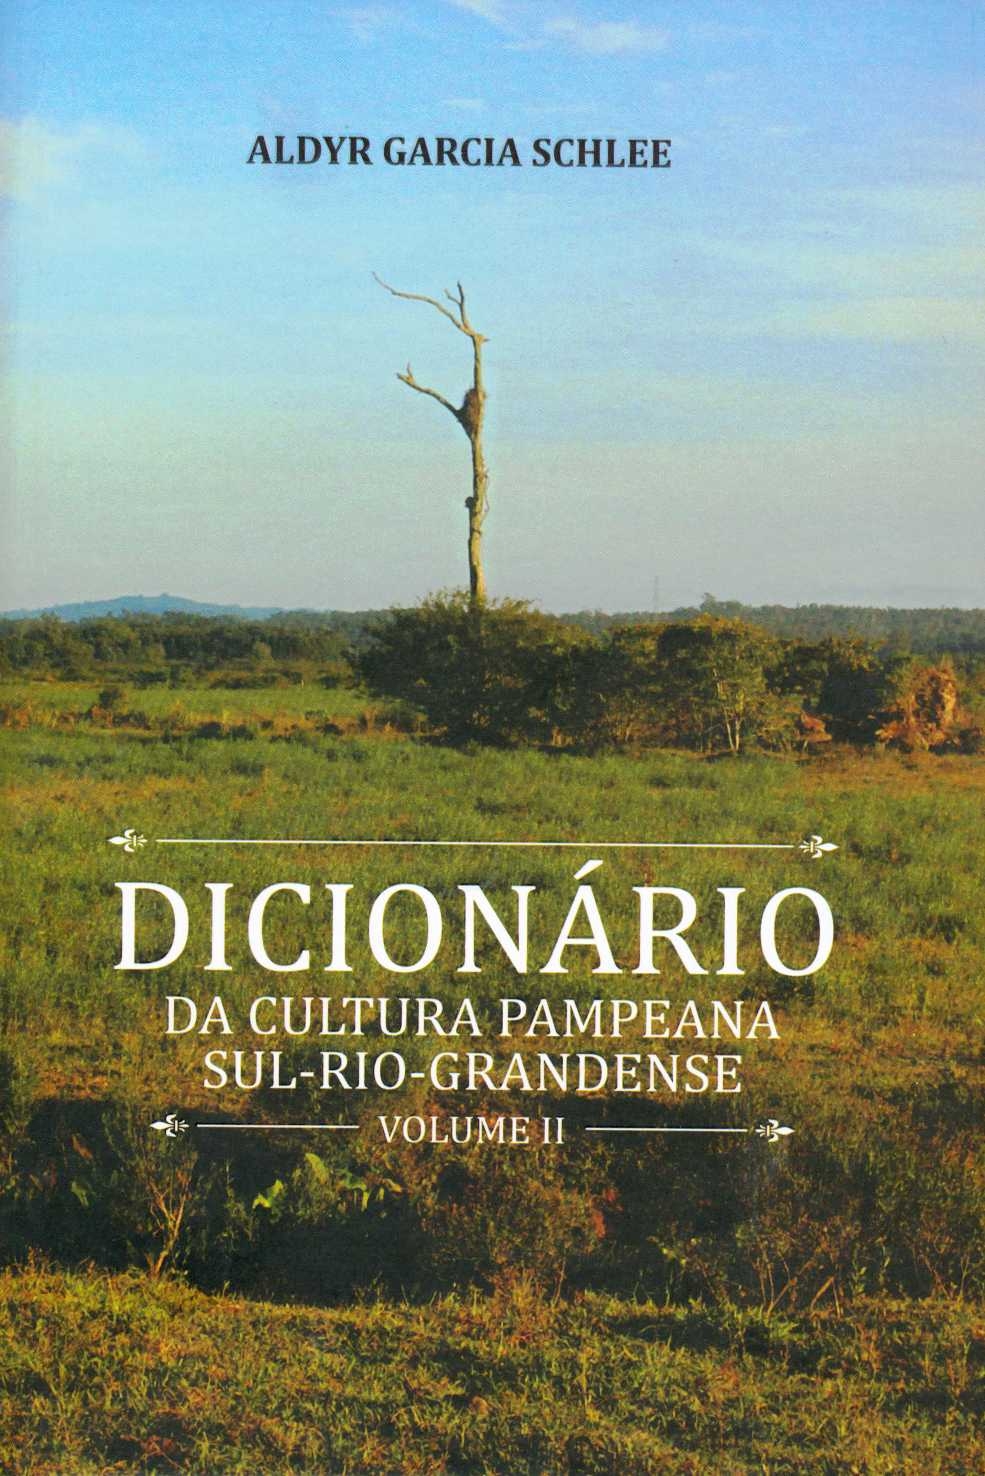 Dicionário da cultura pampeana sul-rio-grandense